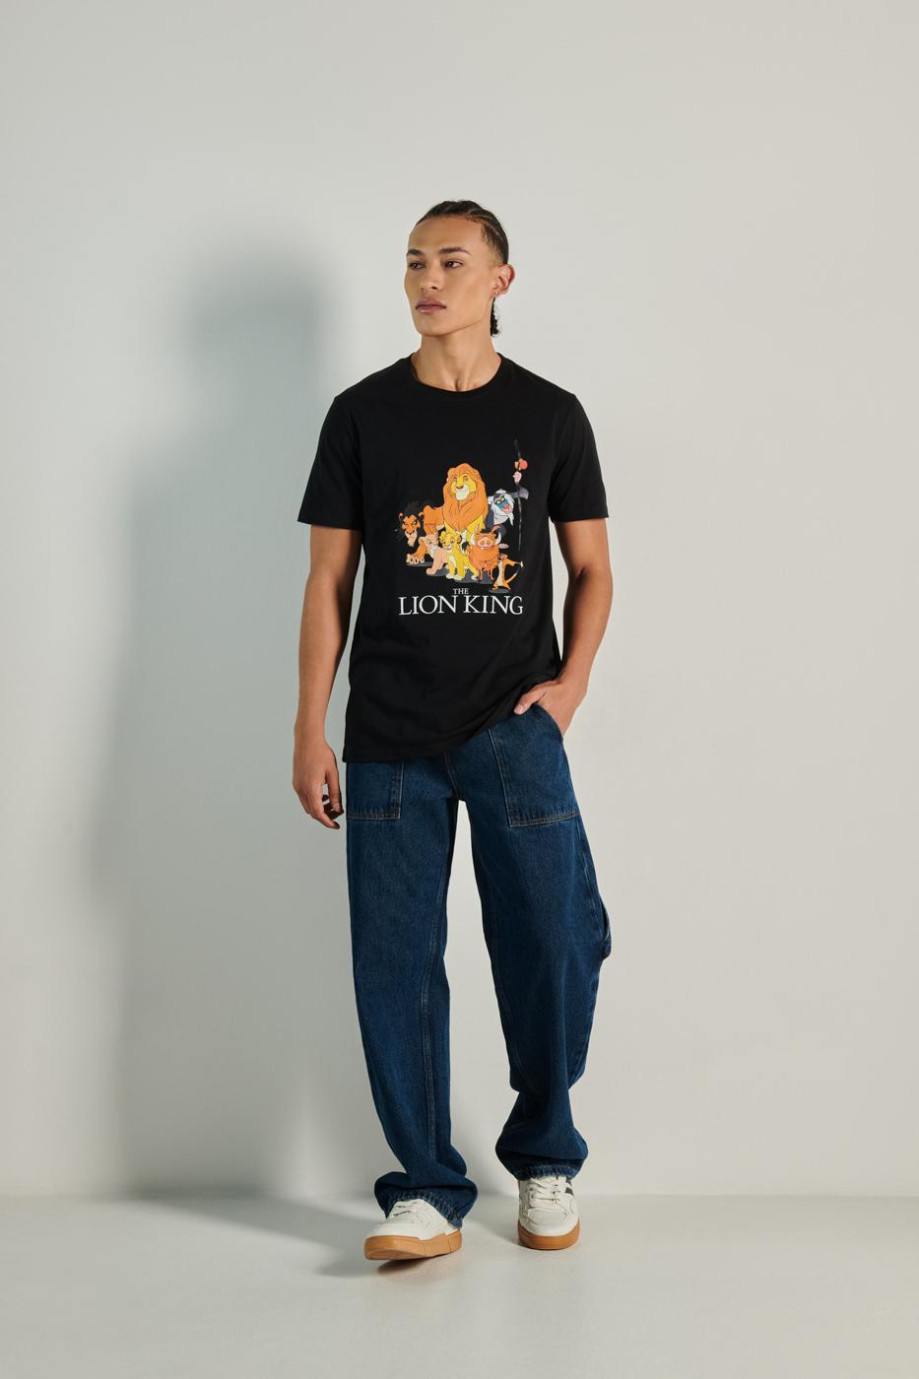 Camiseta unicolor con manga corta y diseño del Rey León